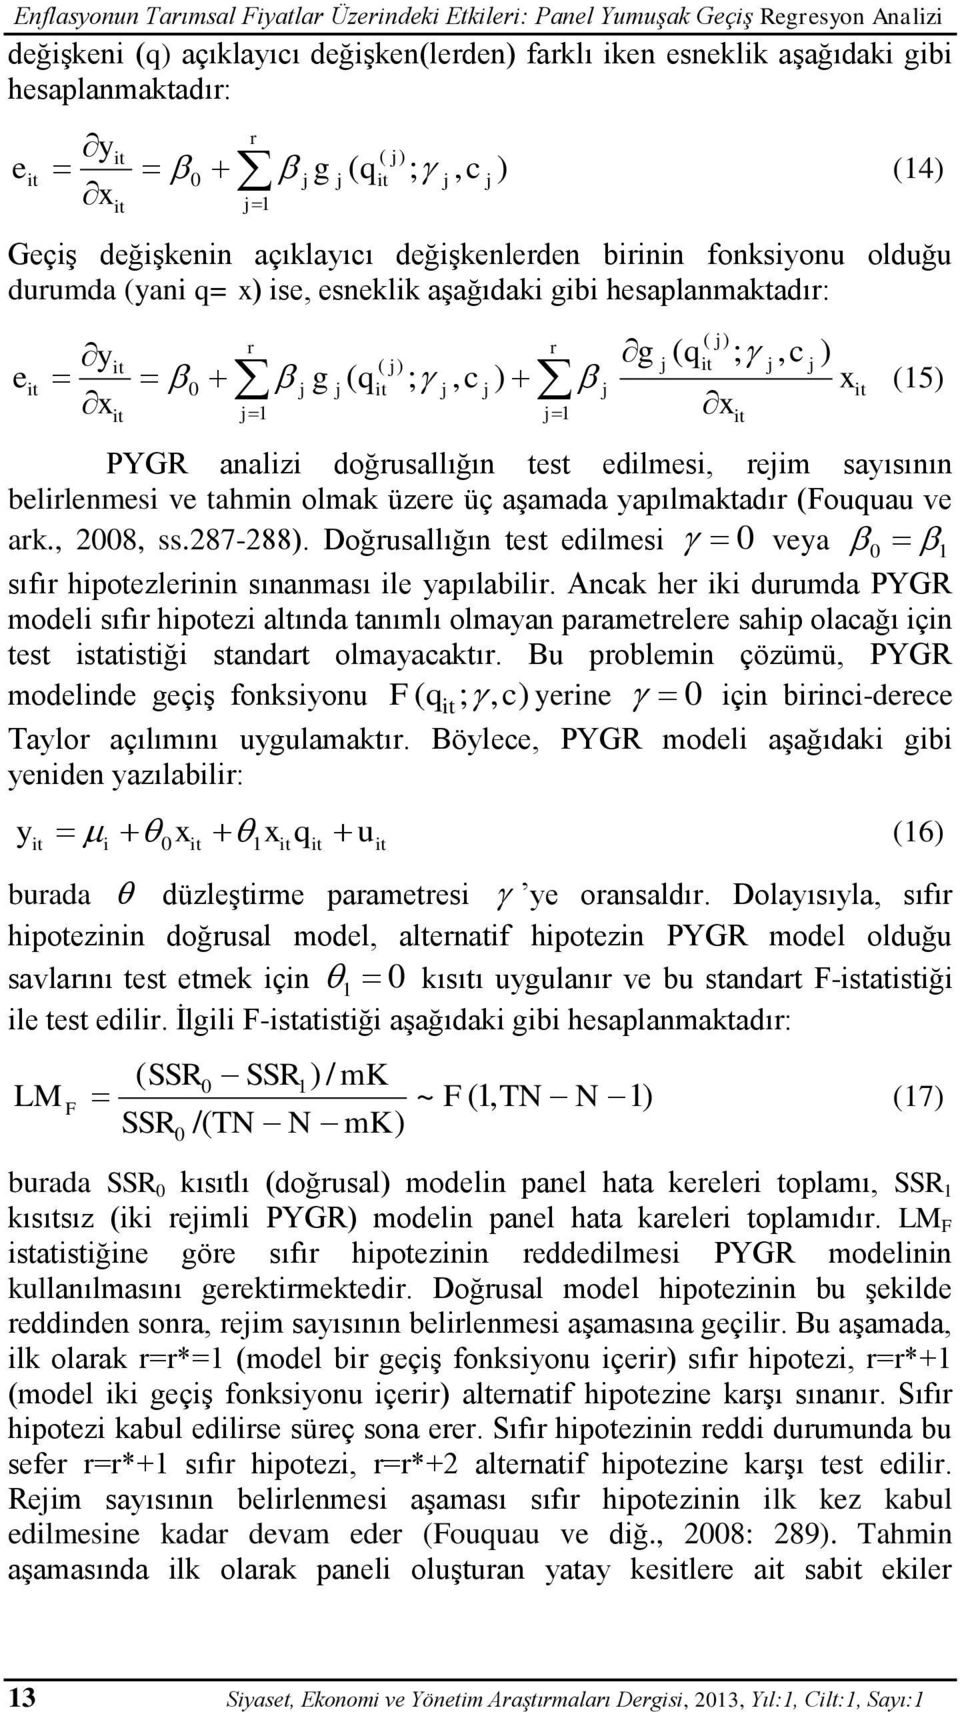 ) x (15) x 1 PYGR analizi doğrusallığın test edilmesi, reim sayısının belirlenmesi ve tahmin olmak üzere üç aşamada yapılmaktadır (Fouquau ve ark., 2008, ss.287-288).